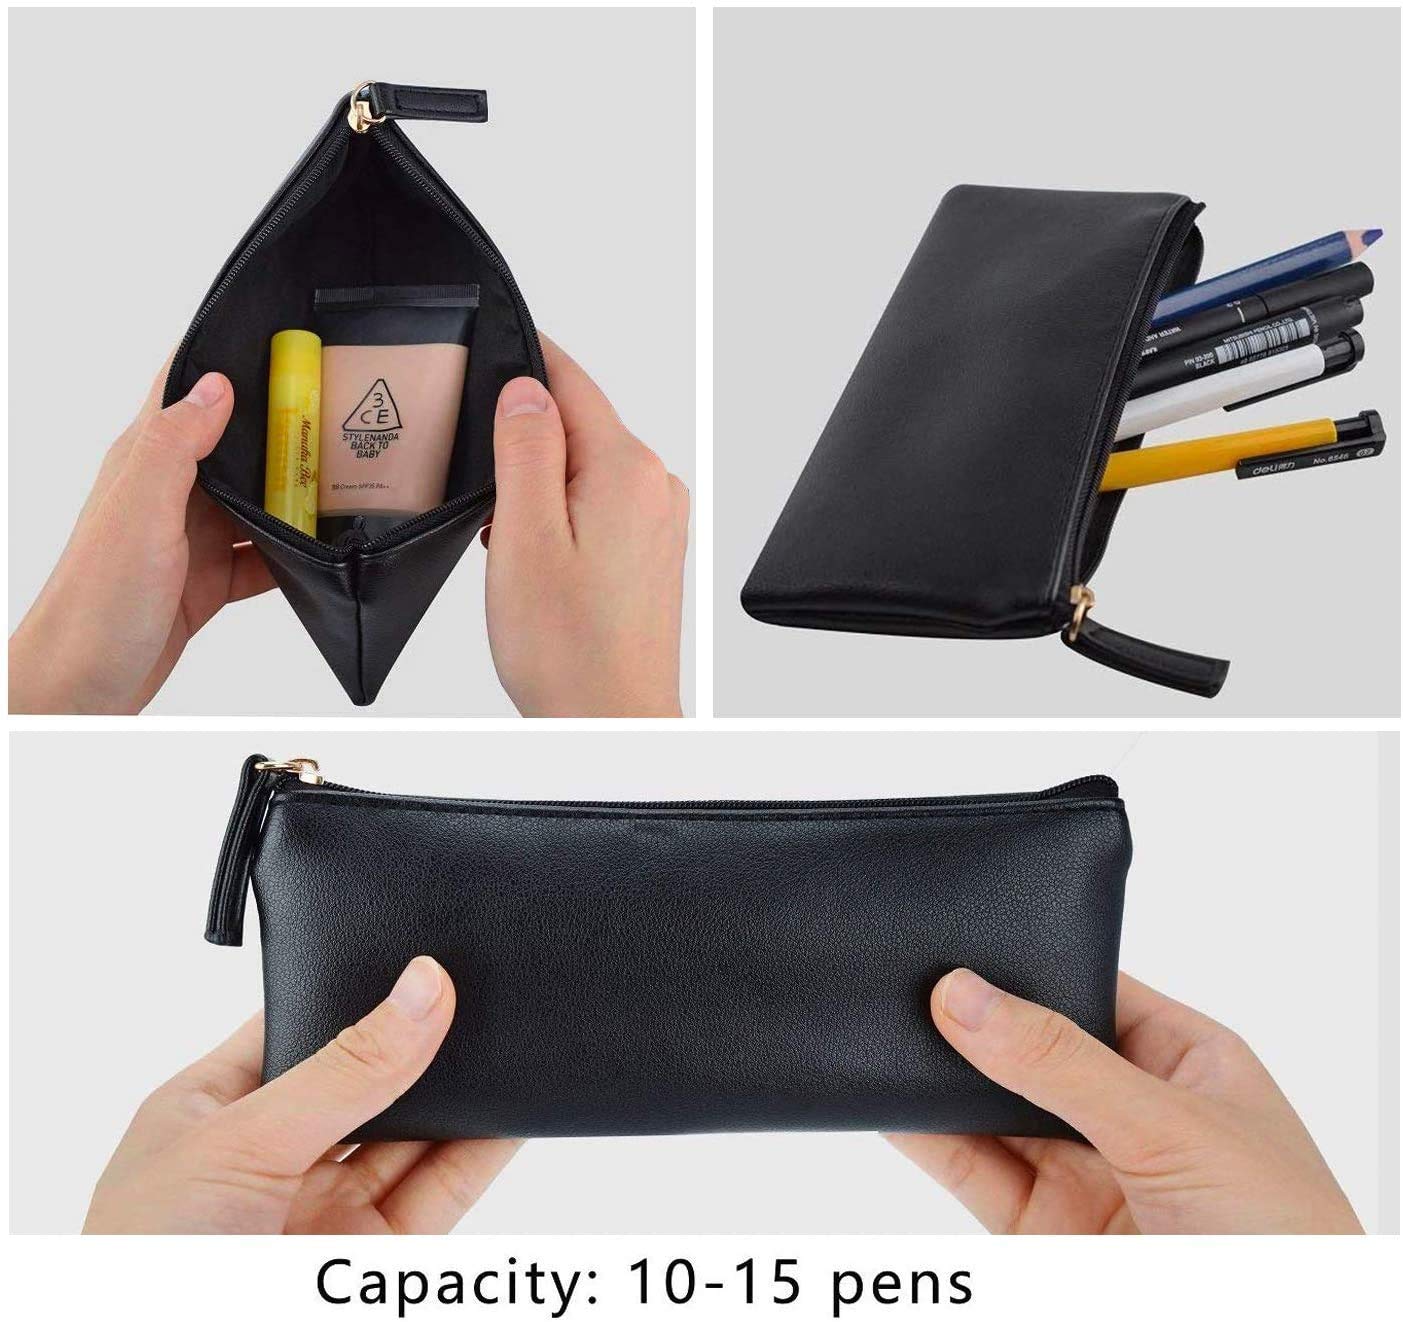 MROCO Pencil Case Pencil Pouch Black Pencil Bag PU Leather Pen Case Small Zipper Pouch for Pencils, Pens, Markers, Makeups, Change, Coins